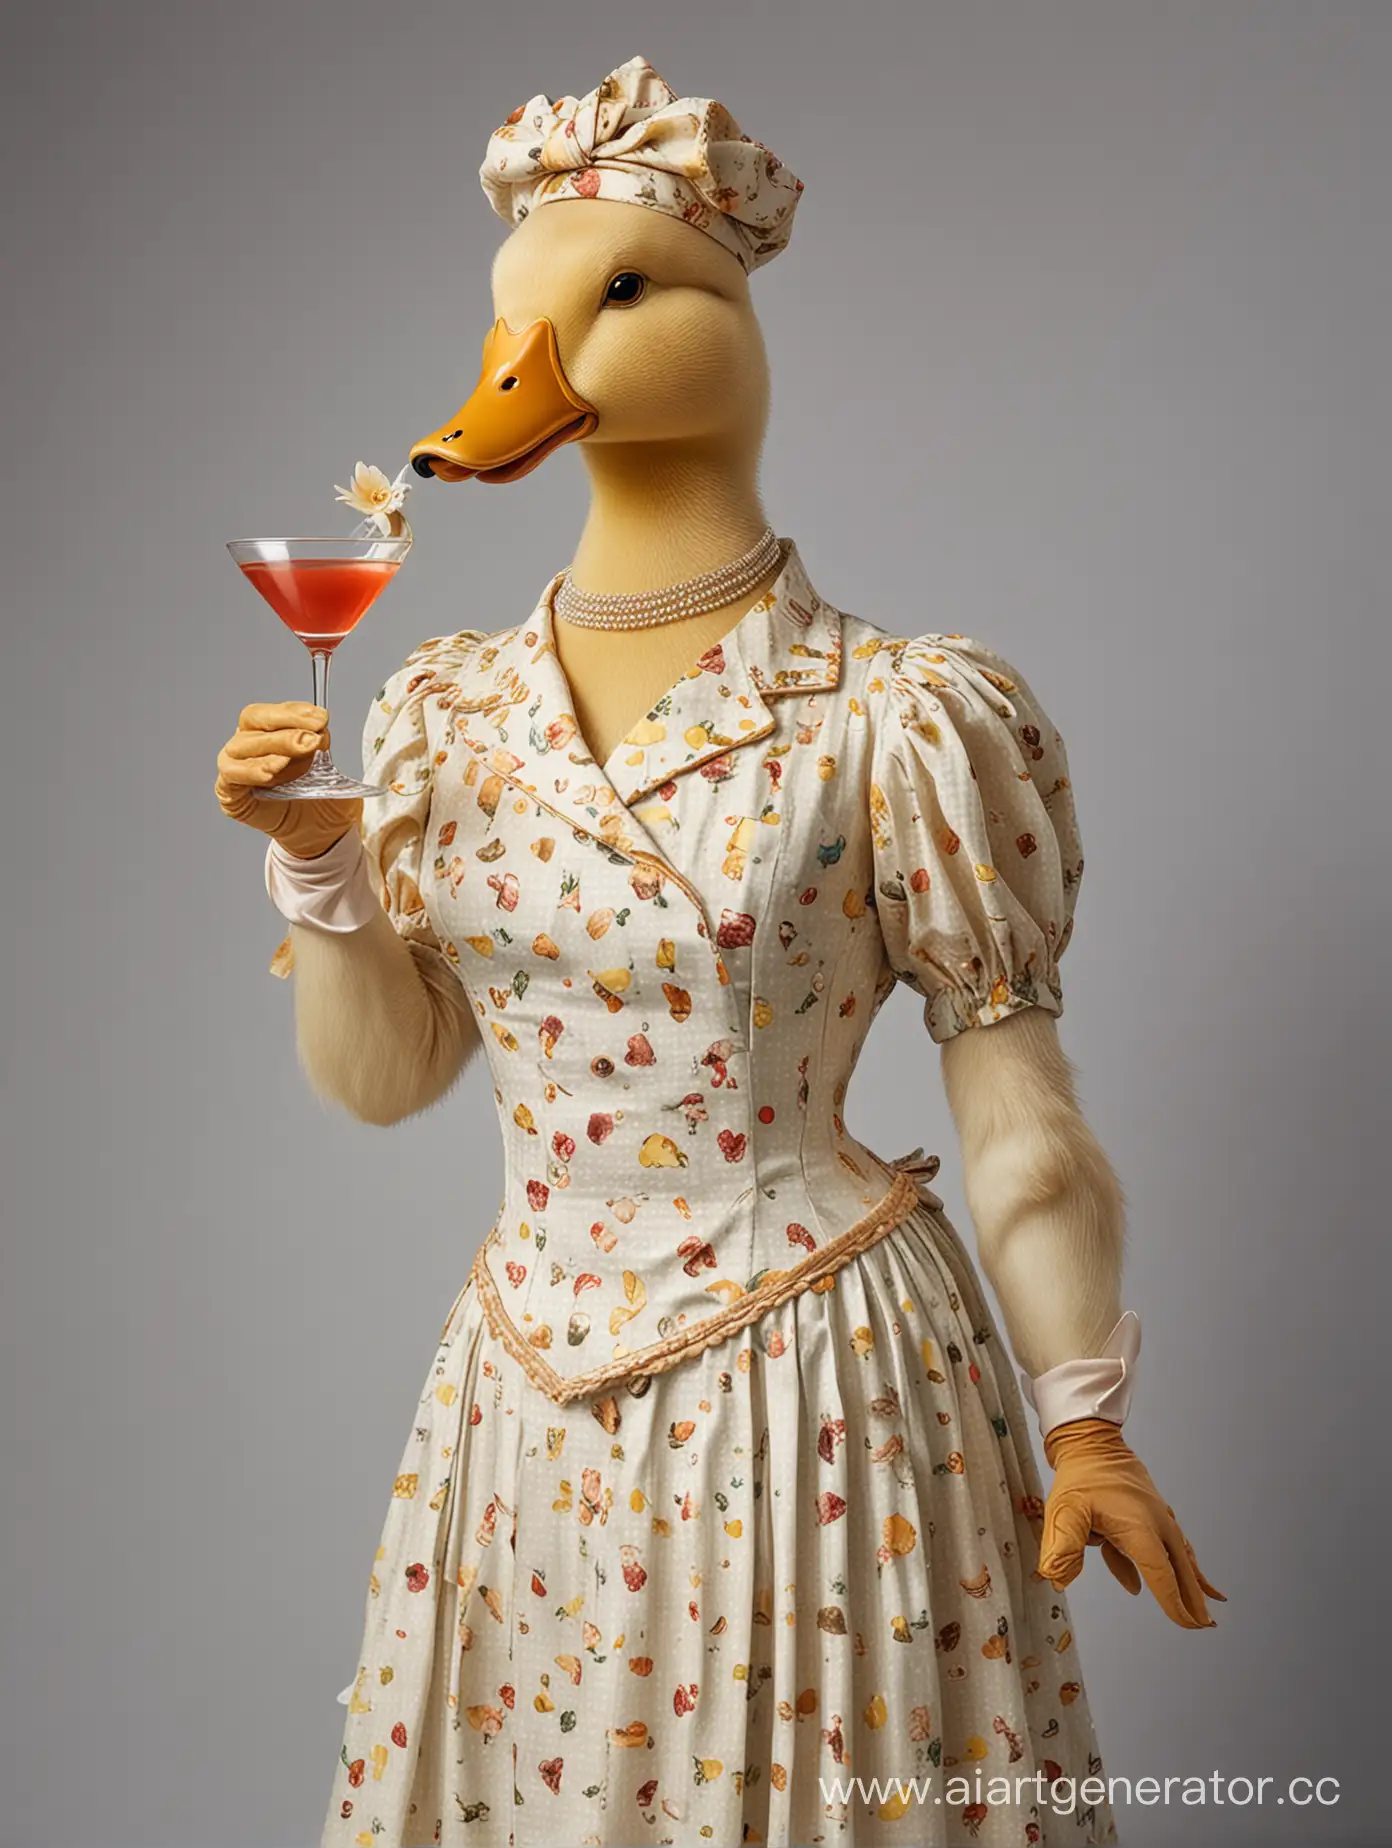 утка в платье,  утка в человеческой одежде протягивает бокал с коктейлем